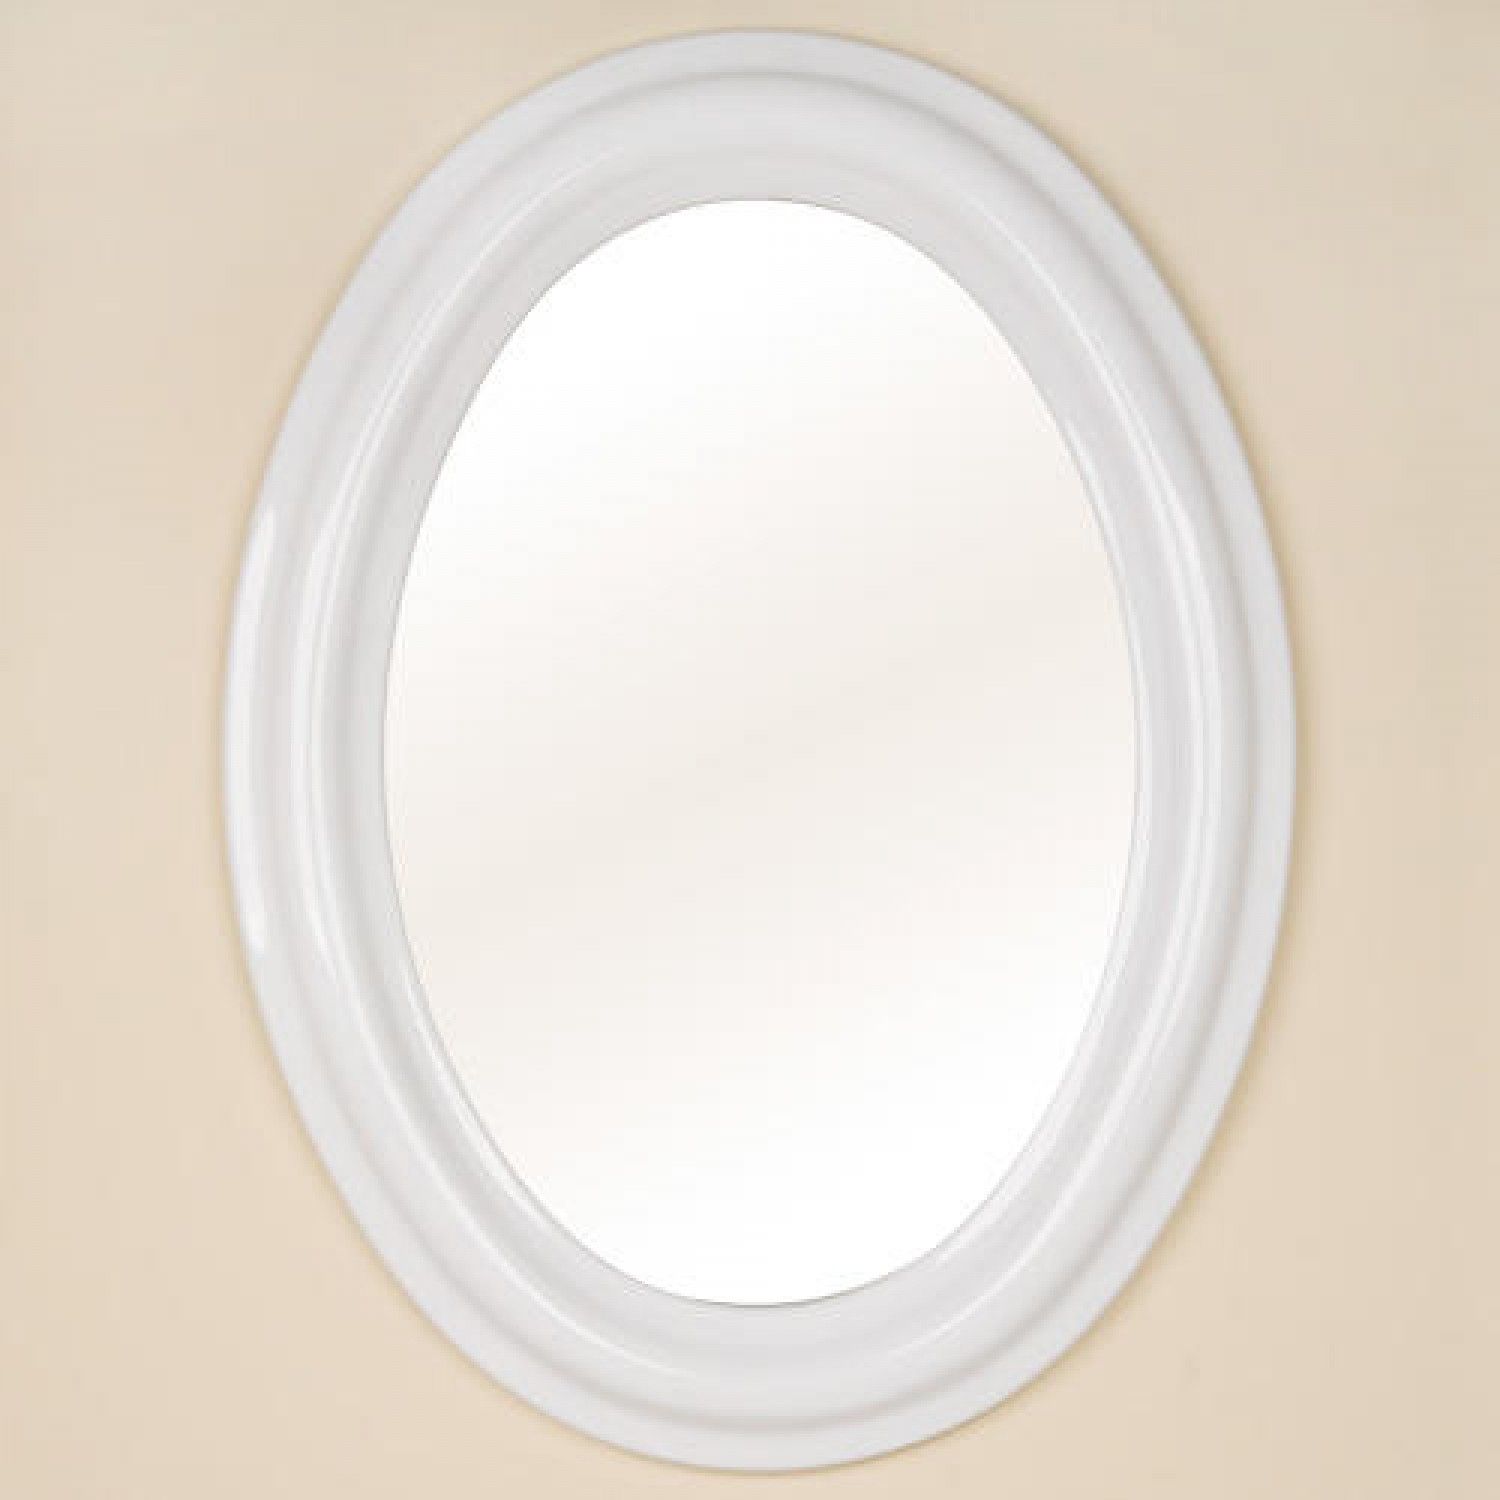 Oval Ceramic Mirror White Bathroom Regarding White Oval Mirror (View 2 of 15)